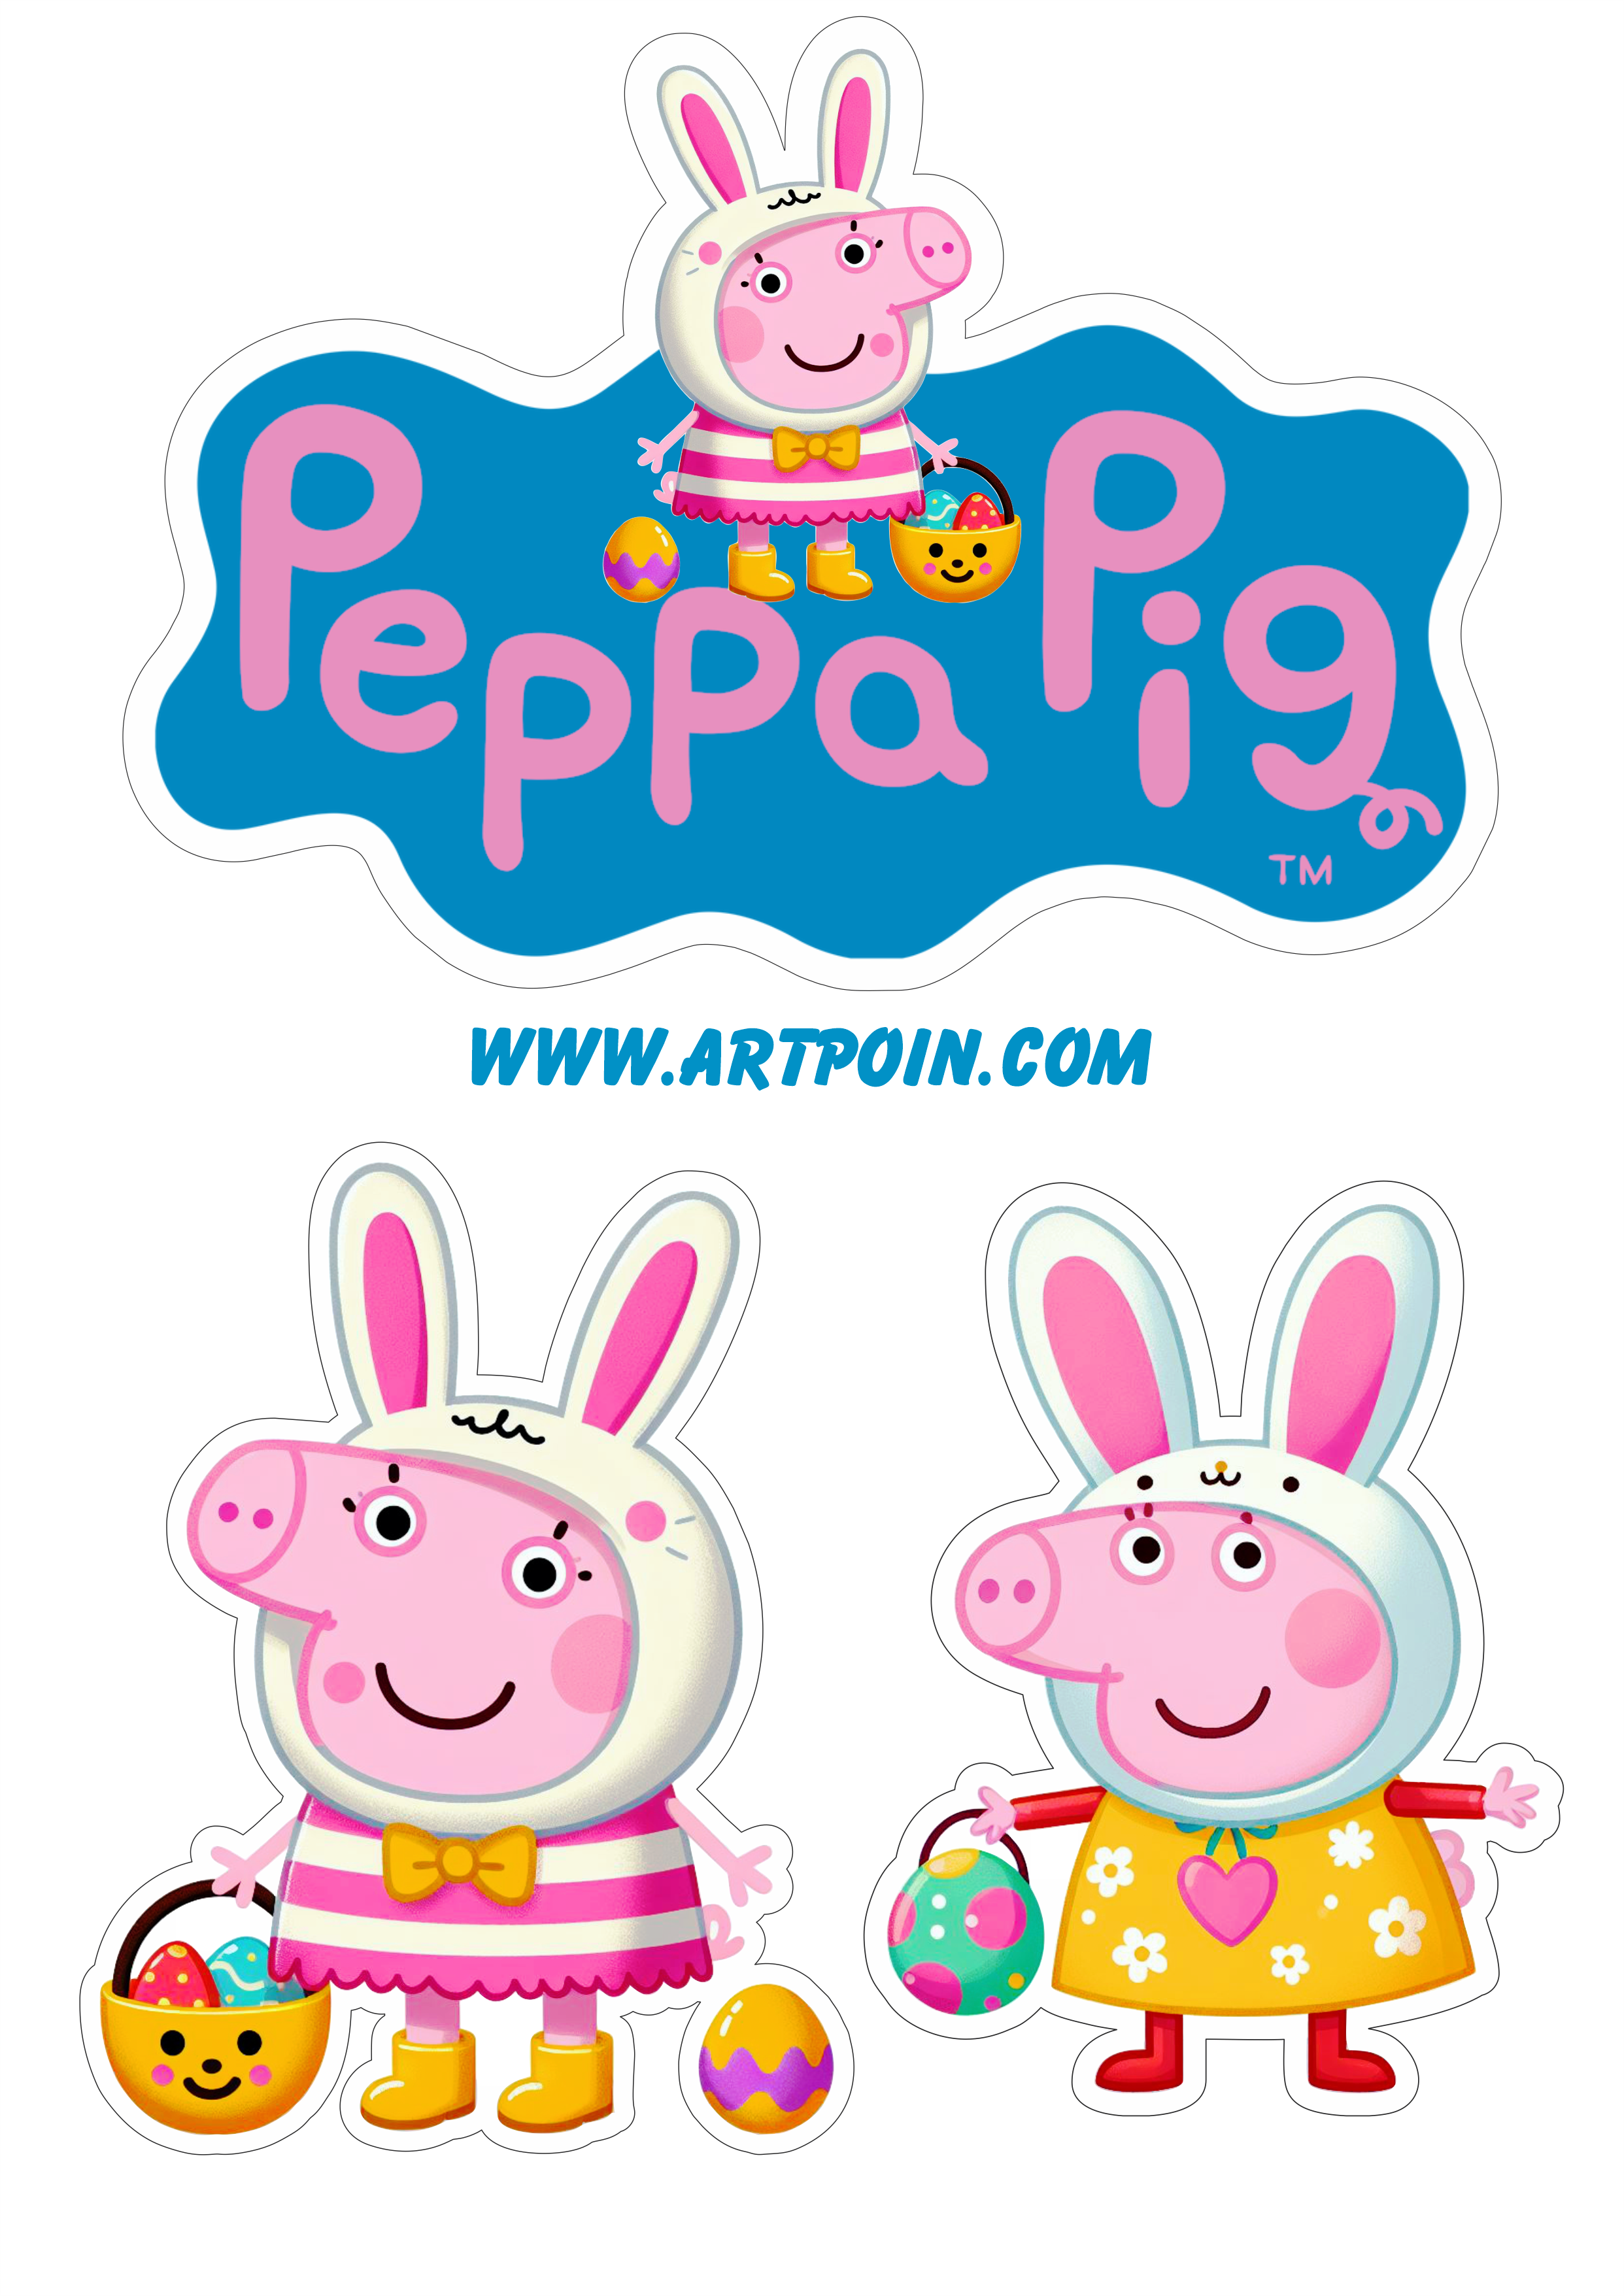 Topo de bolo para imprimir Peppa pig páscoa decoração de festa infantil png